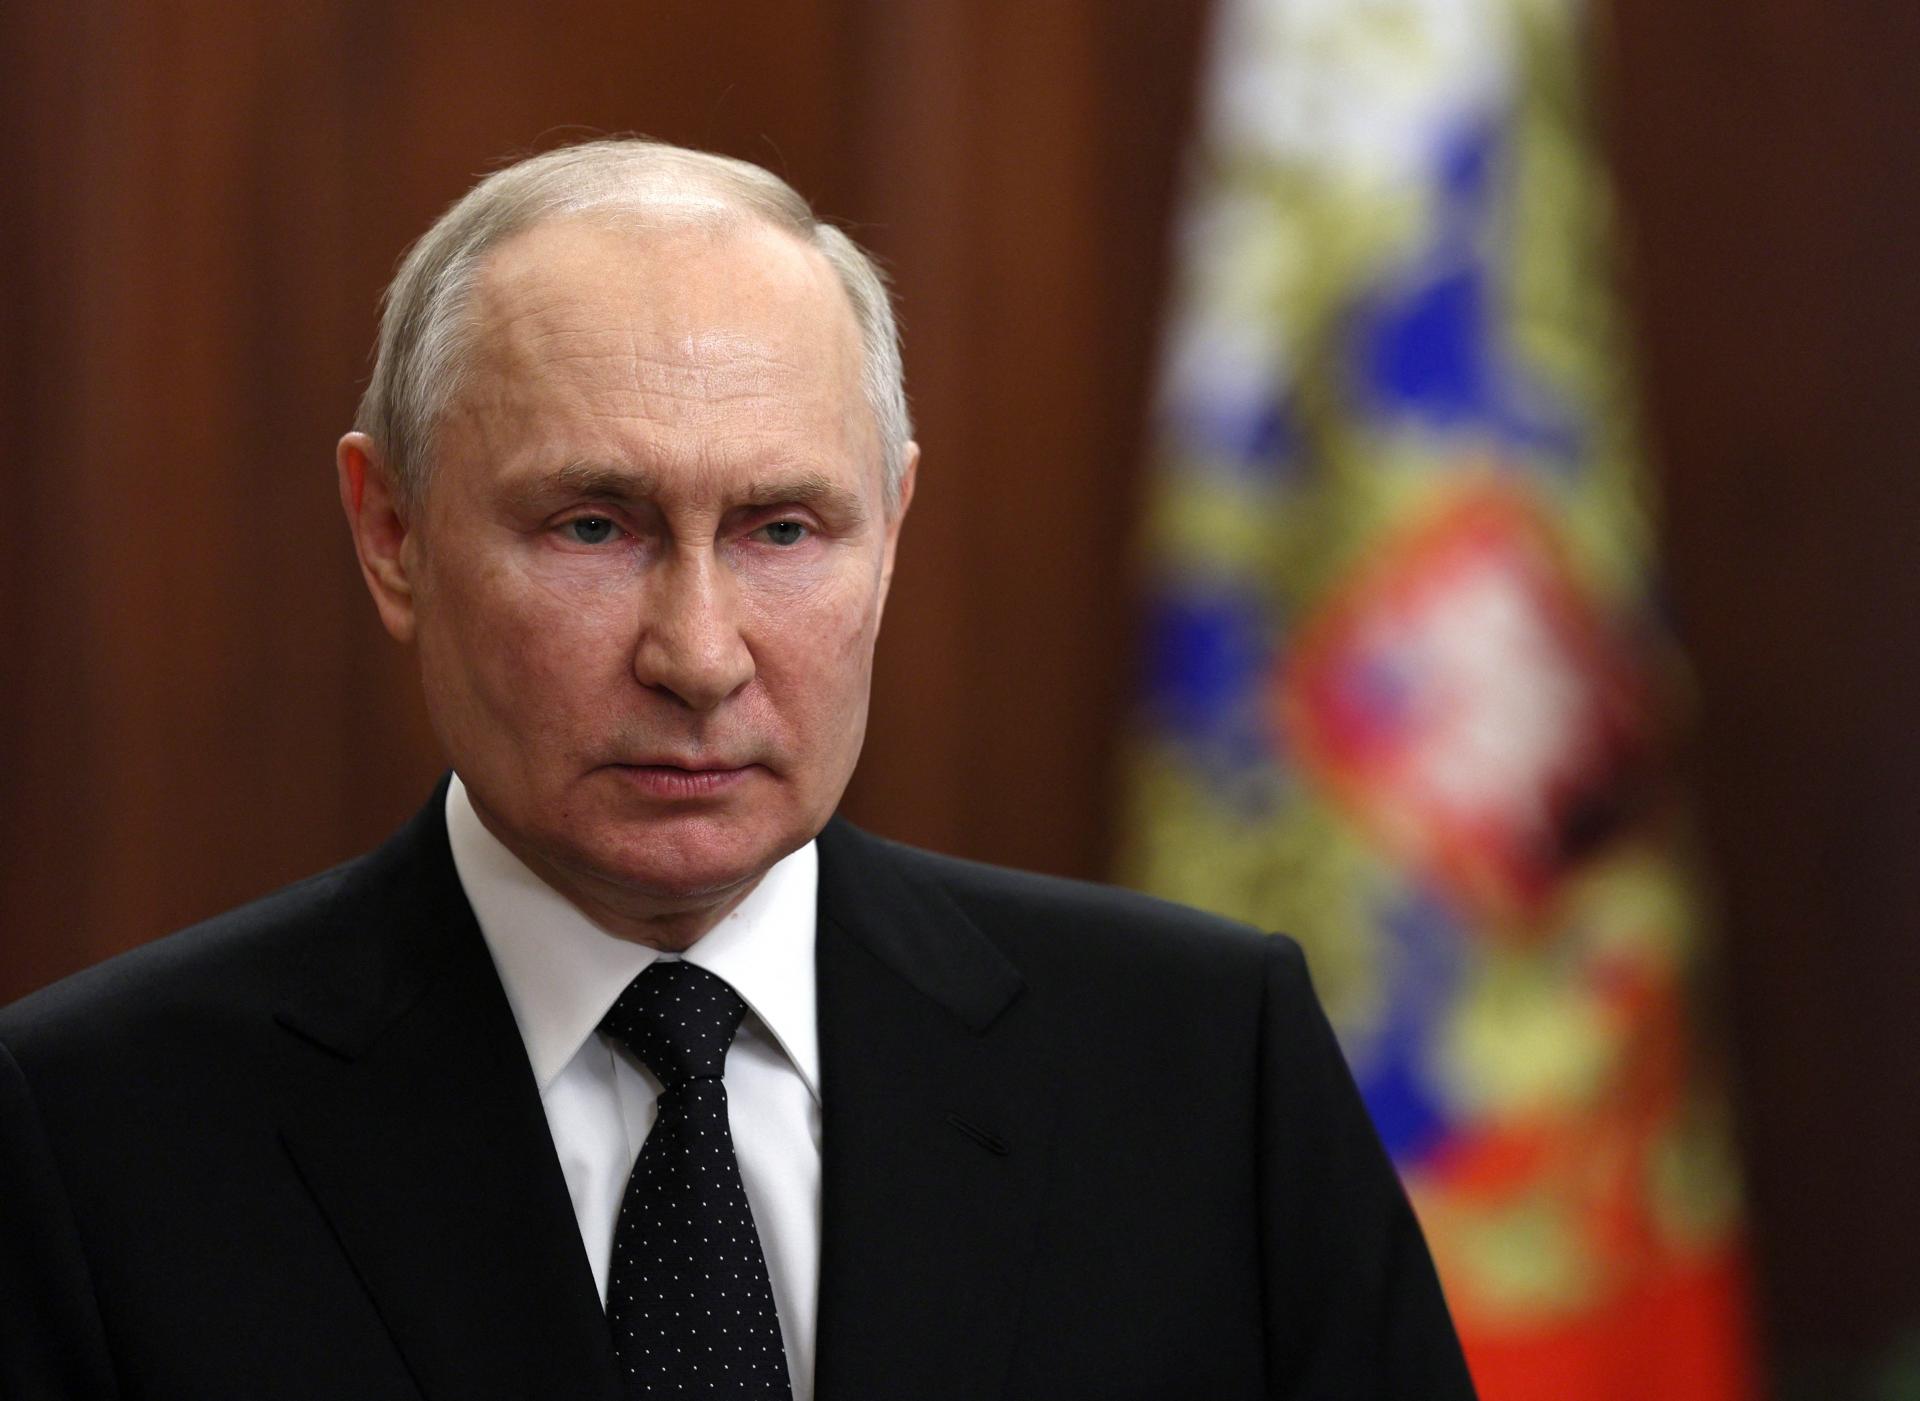 Putinovo lietadlo pristálo v Petrohrade. Prezident pracuje v Kremli, tvrdí jeho hovorca